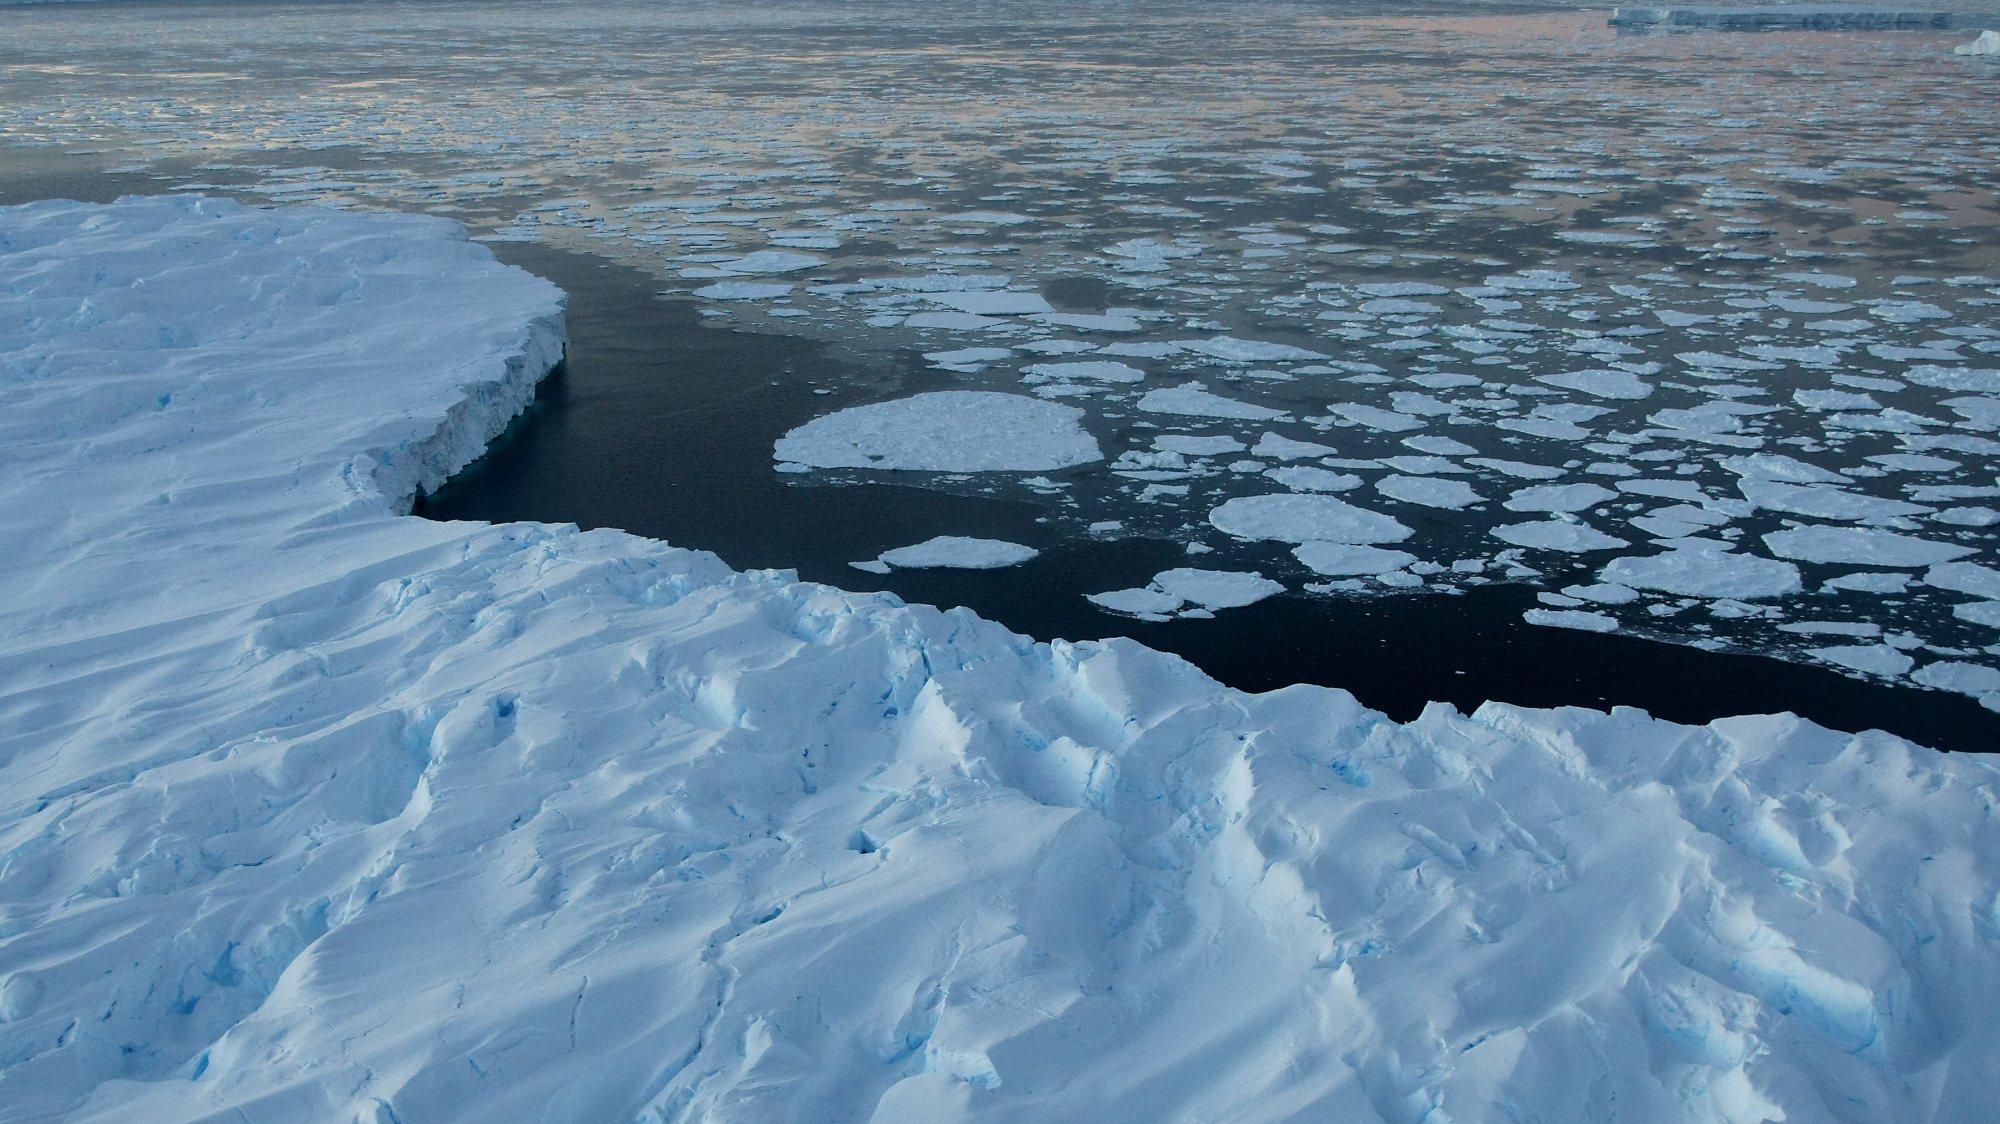 Dados por satélite demonstraram que o início do evento que culminou no colapso da plataforma de gelo ter-se-á dado entre 5 e 7 de março